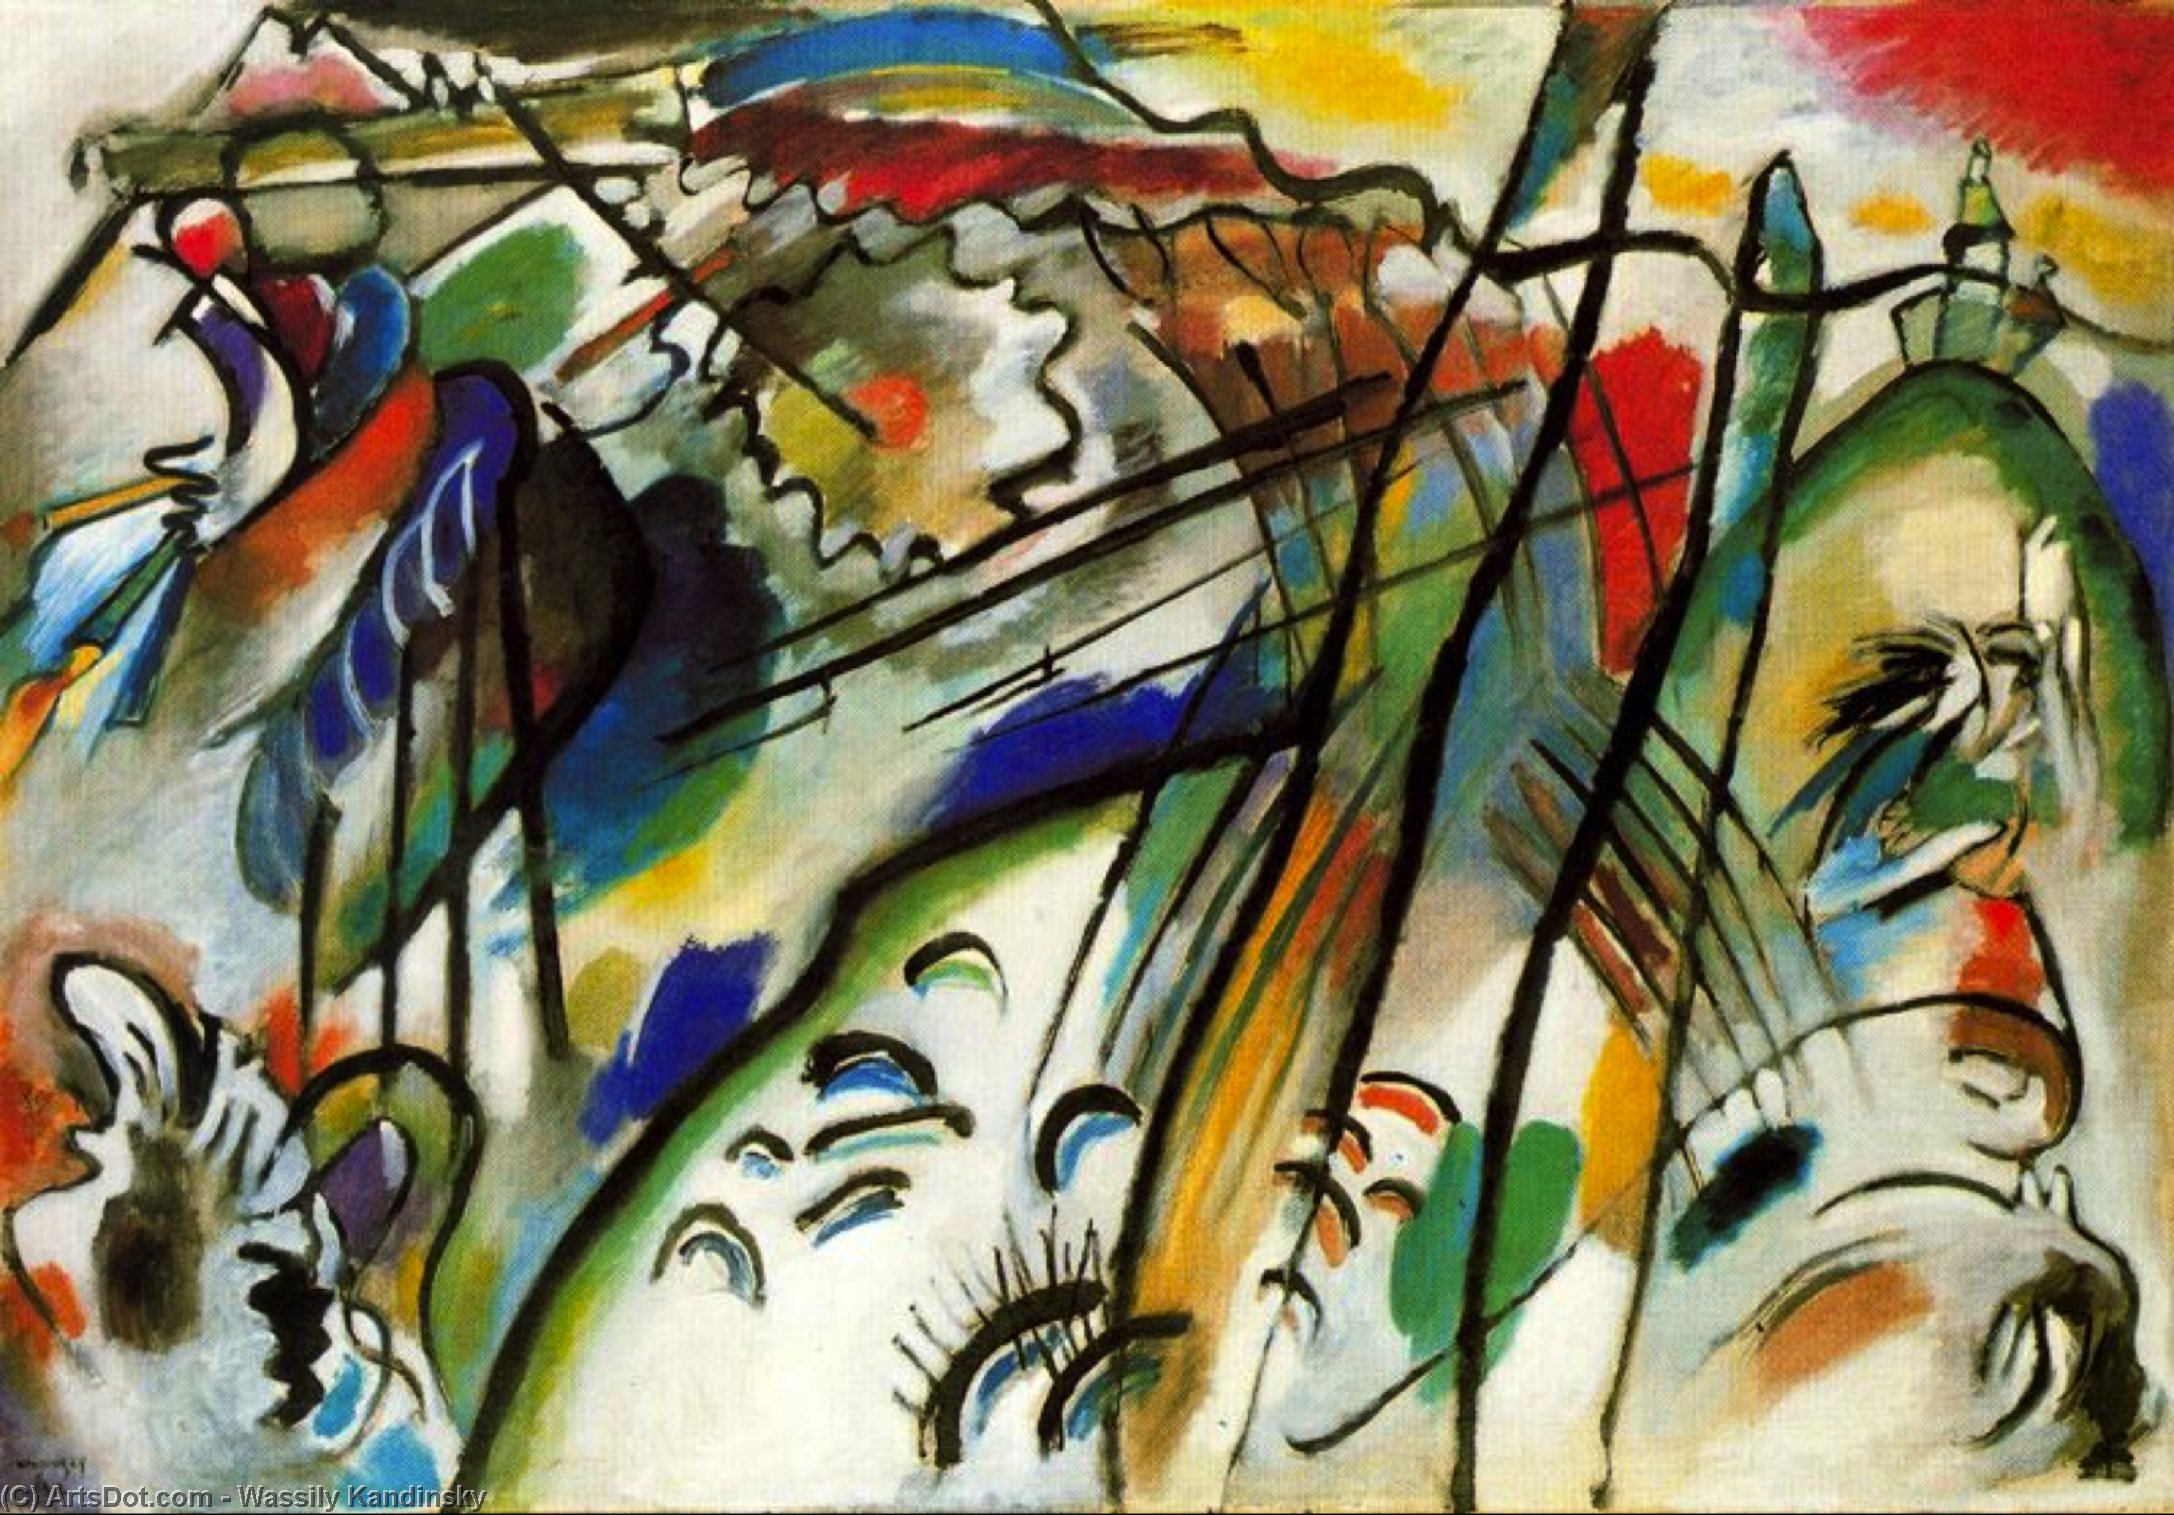 Wikoo.org - موسوعة الفنون الجميلة - اللوحة، العمل الفني Wassily Kandinsky - Improvisation 28 (second version)